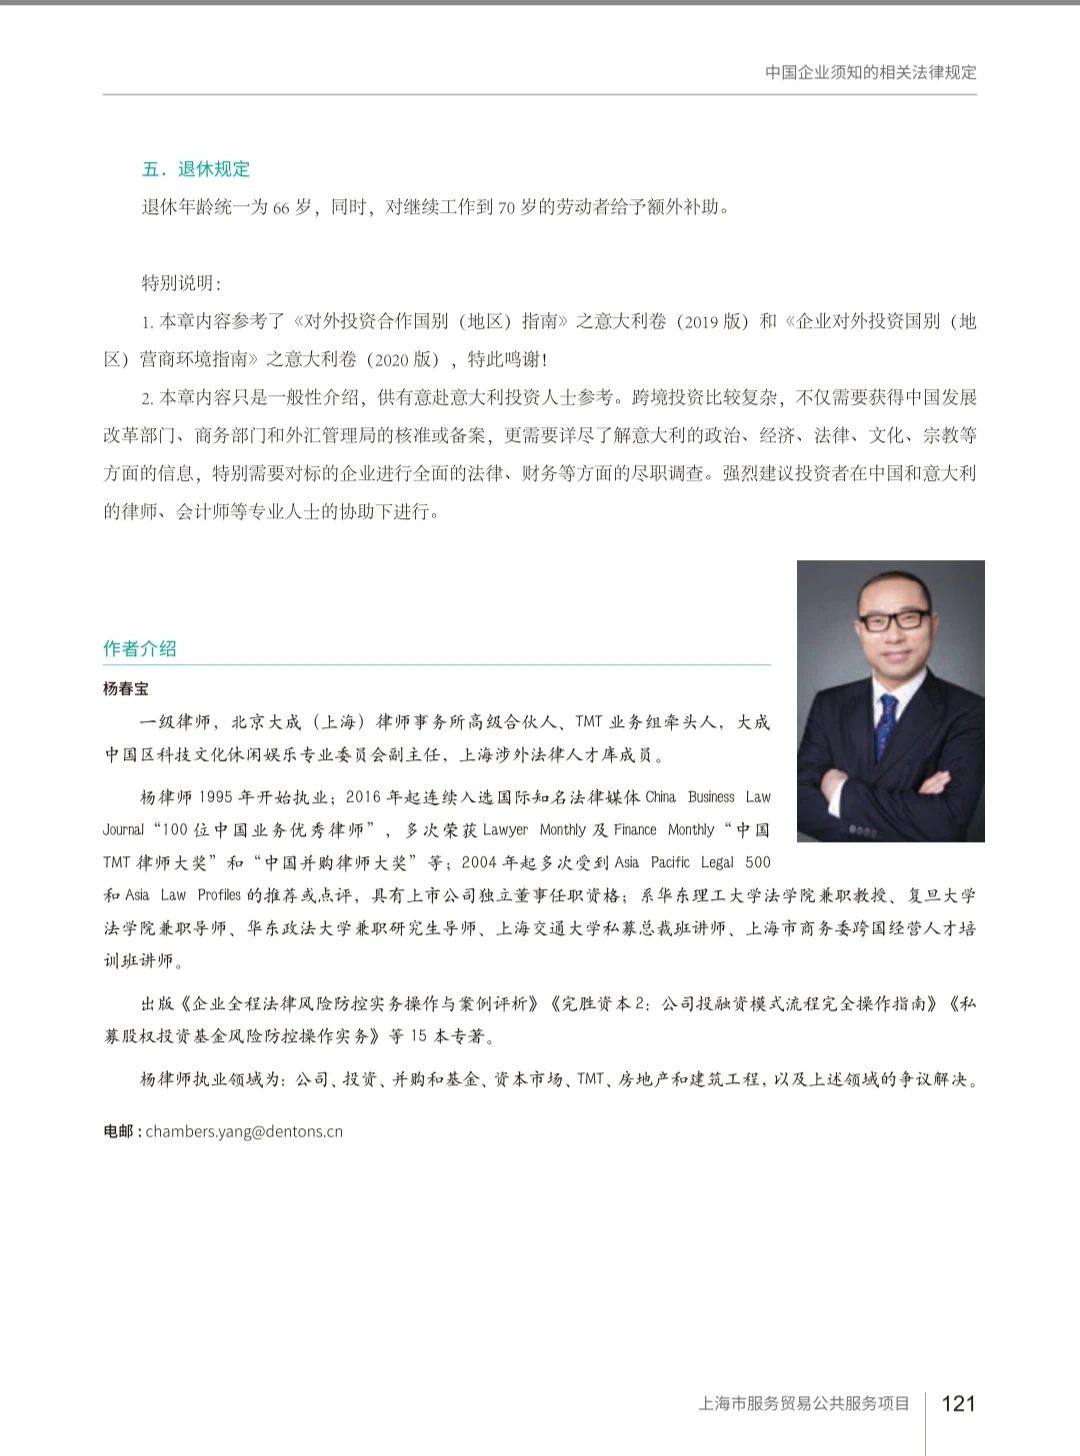 杨春宝律师参与编著《服务贸易海外重点市场拓展指南(欧洲卷·意大利)》 - 法律桥-上海杨春宝一级律师